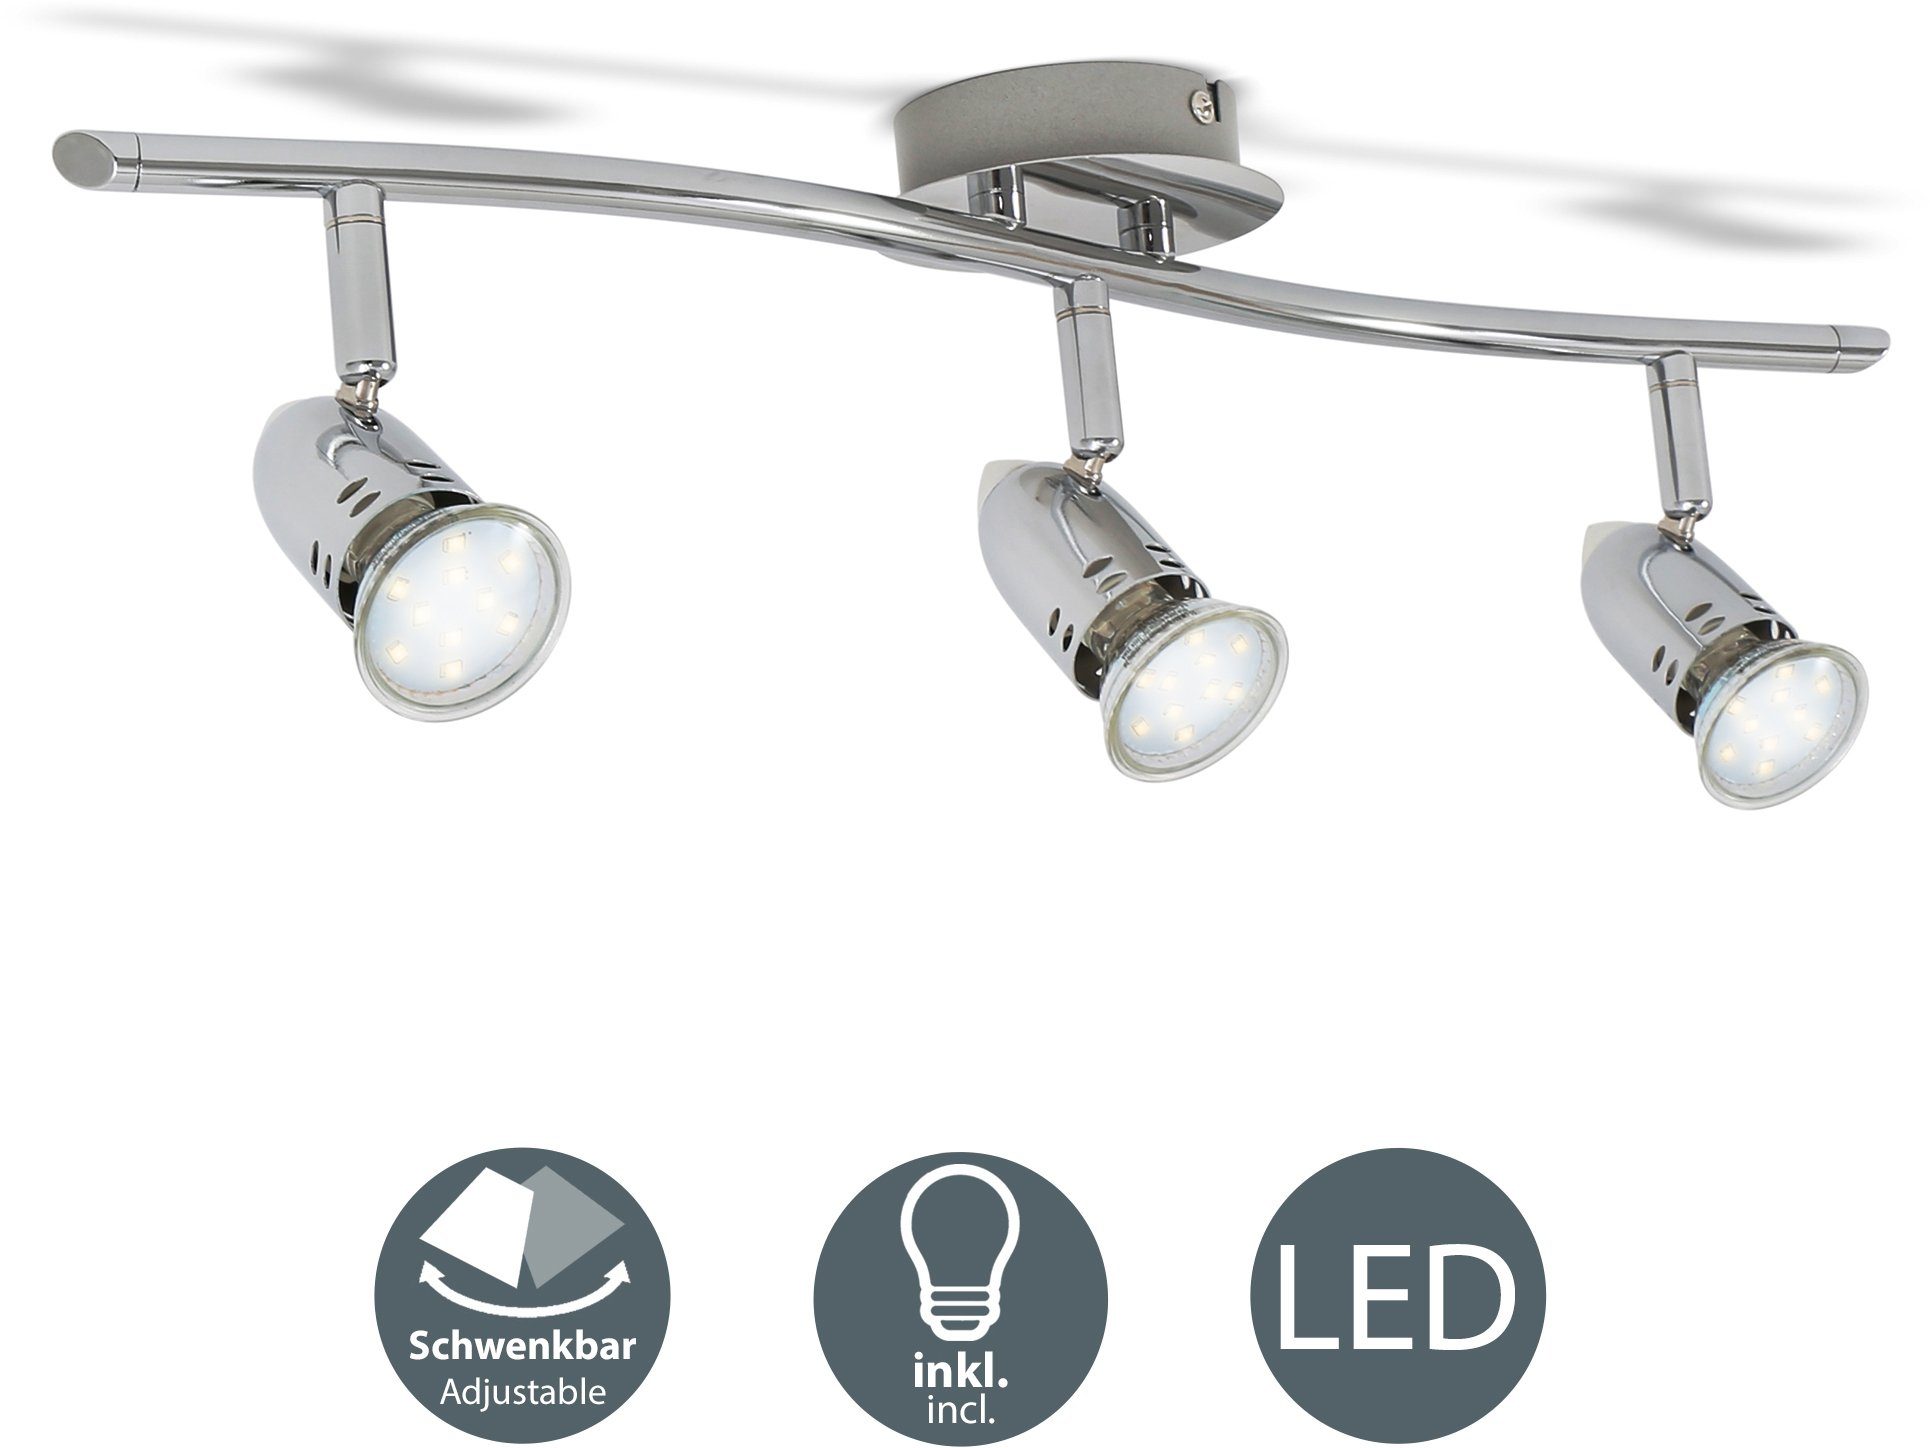 Warmweiß, Design modern B.K.Licht chrom LED Deckenlampe 3W wechselbar, GU10 250lm Spot-Strahler inkl. LED Deckenleuchte, Leuchtmittel